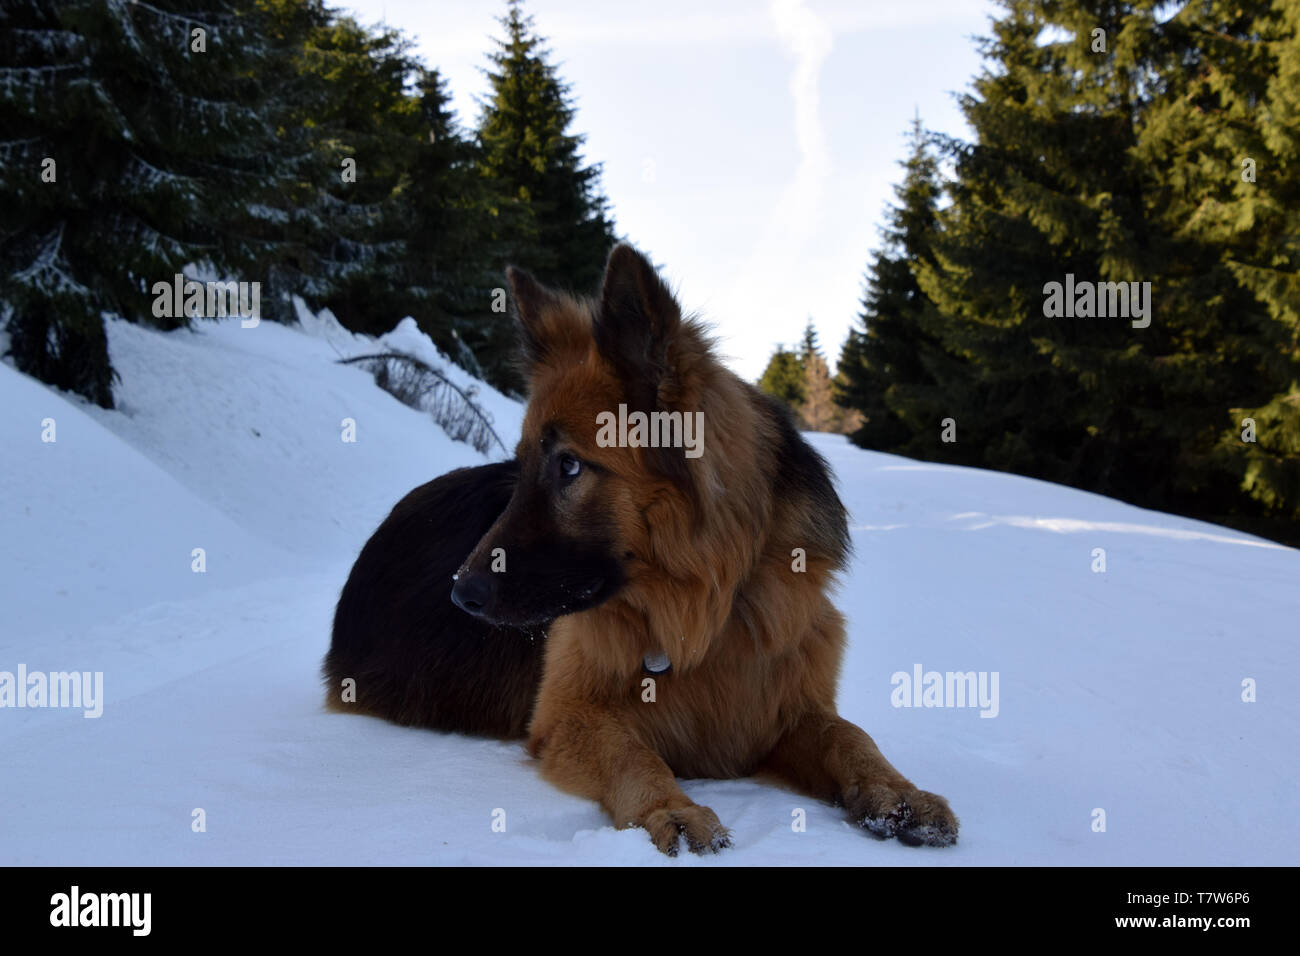 German Shepherd (long haired) portrait in winter scenery. Stock Photo